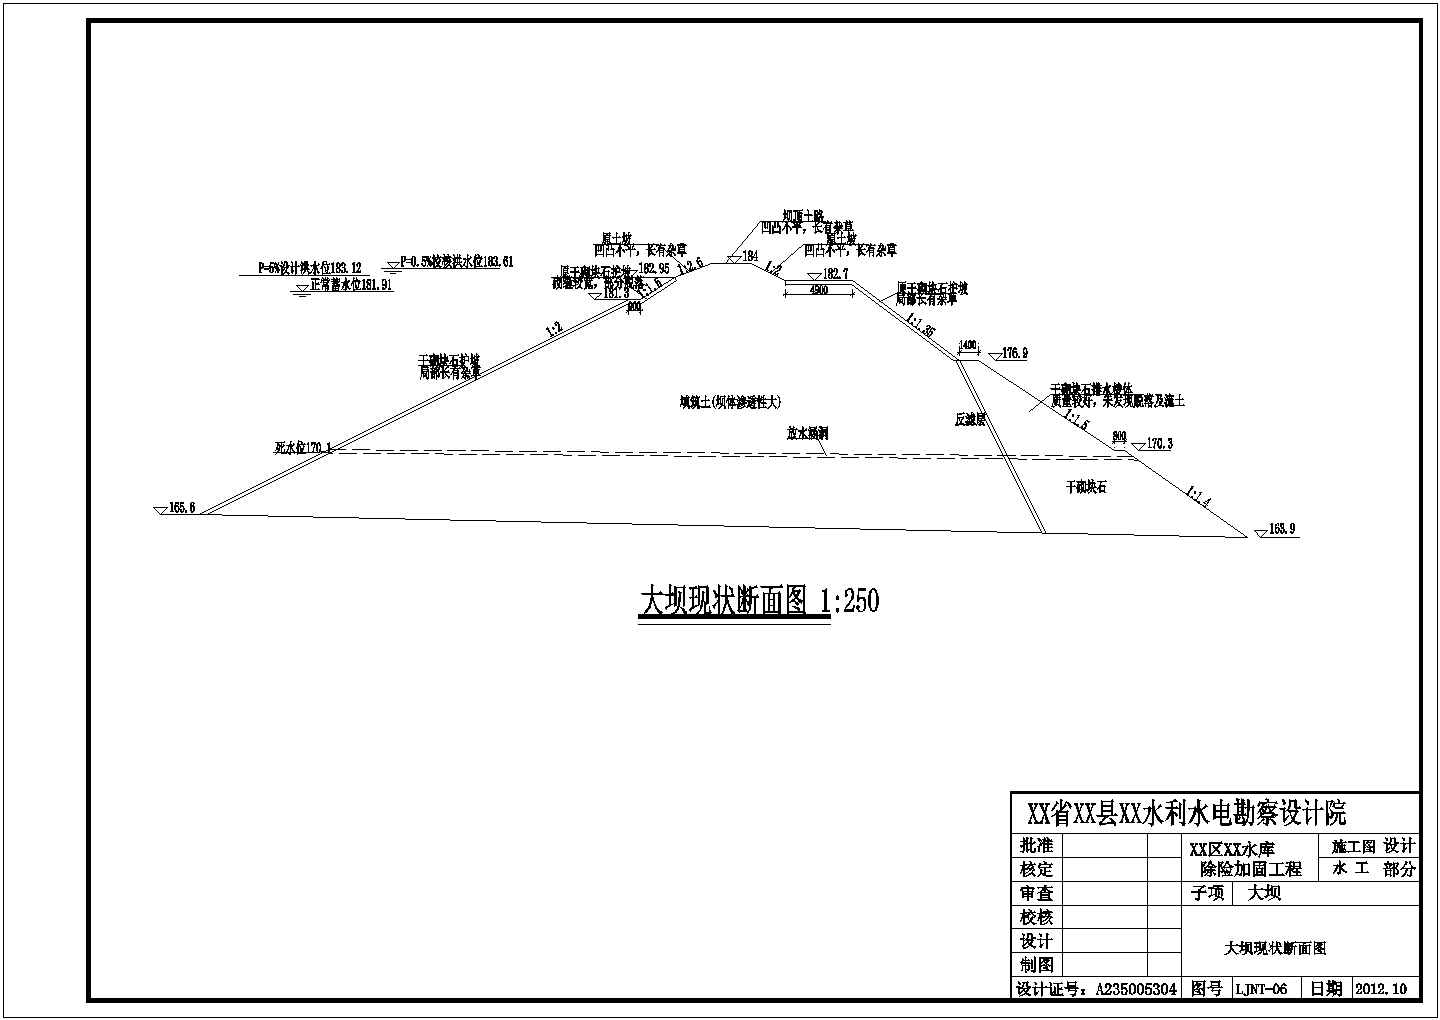 【四川】某郊区土石坝水库除险加固工程全套施工设计cad图